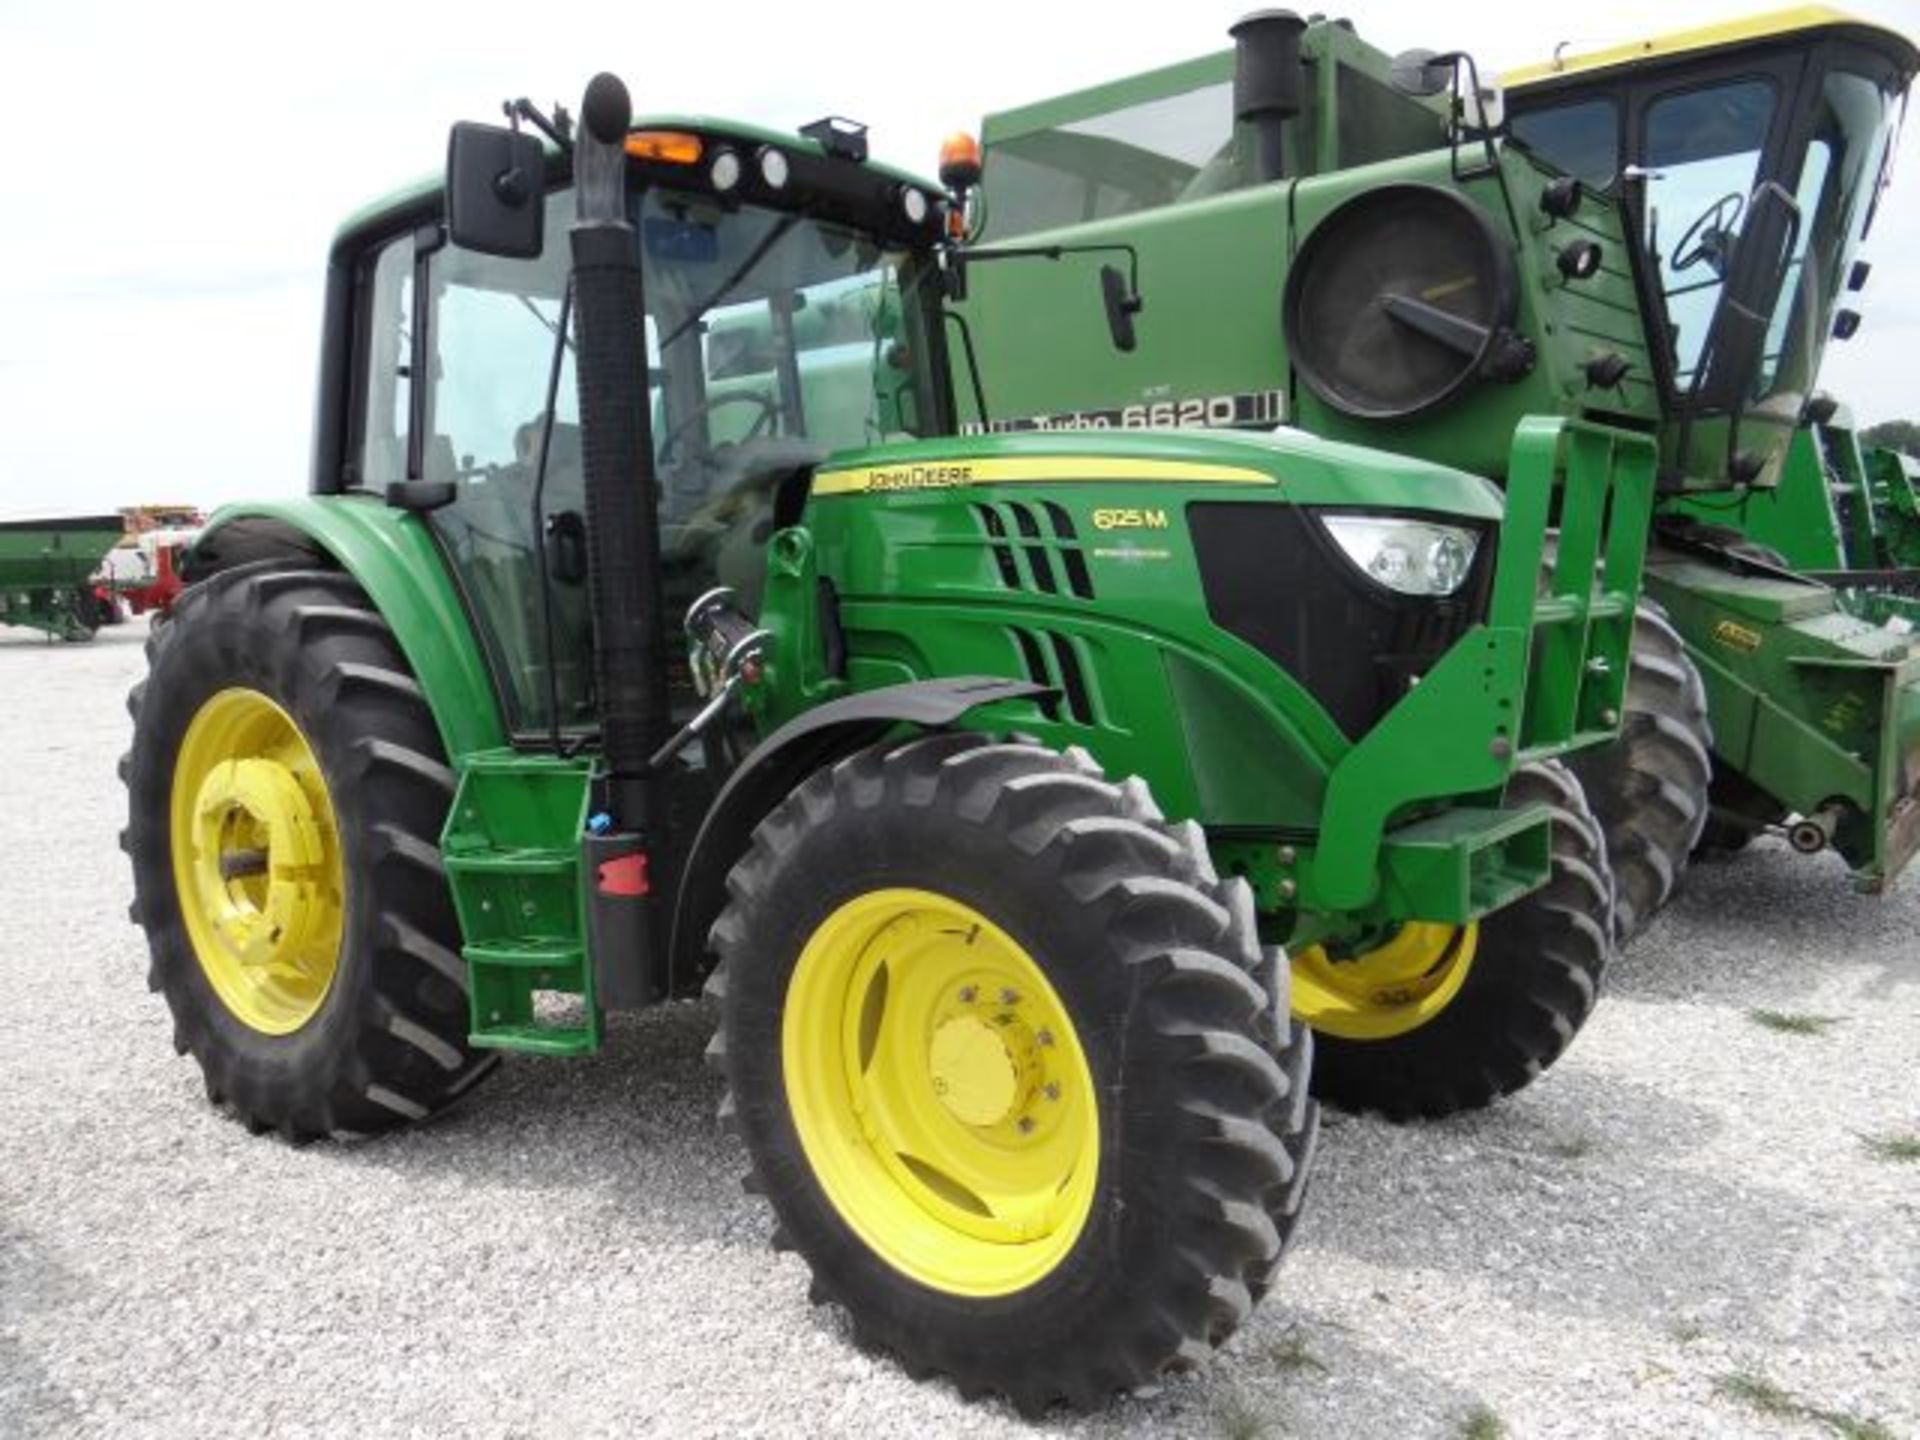 JD 6125M Tractor, 2014 #144888, 562 hrs, MFWD, 24sp PQ, 3 SCVs, Dual PTO, Fenders, Greenstar Ready - Bild 2 aus 6